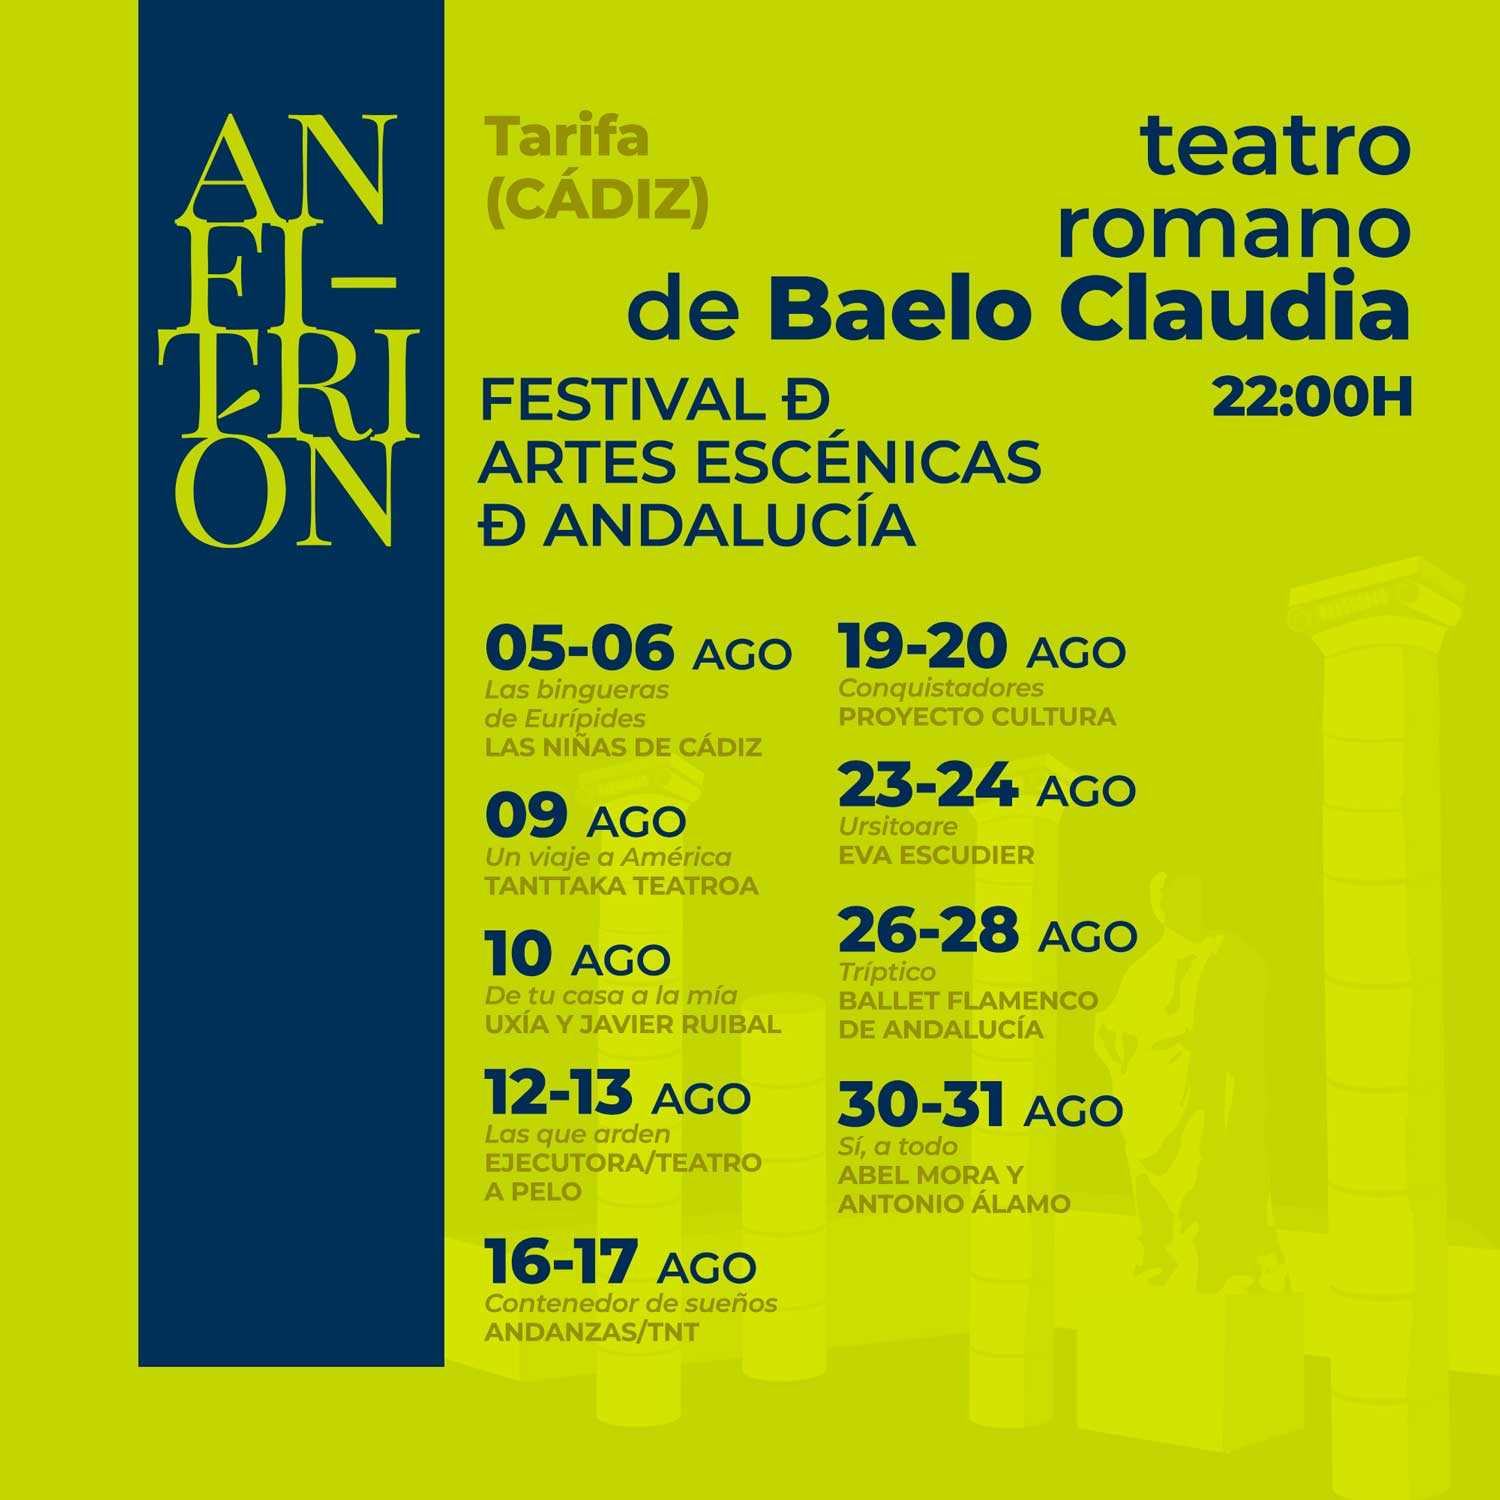 Anfitrión - Festival de Artes Escénicas en el Teatro Romano de Baelo Claudia - Tarifa